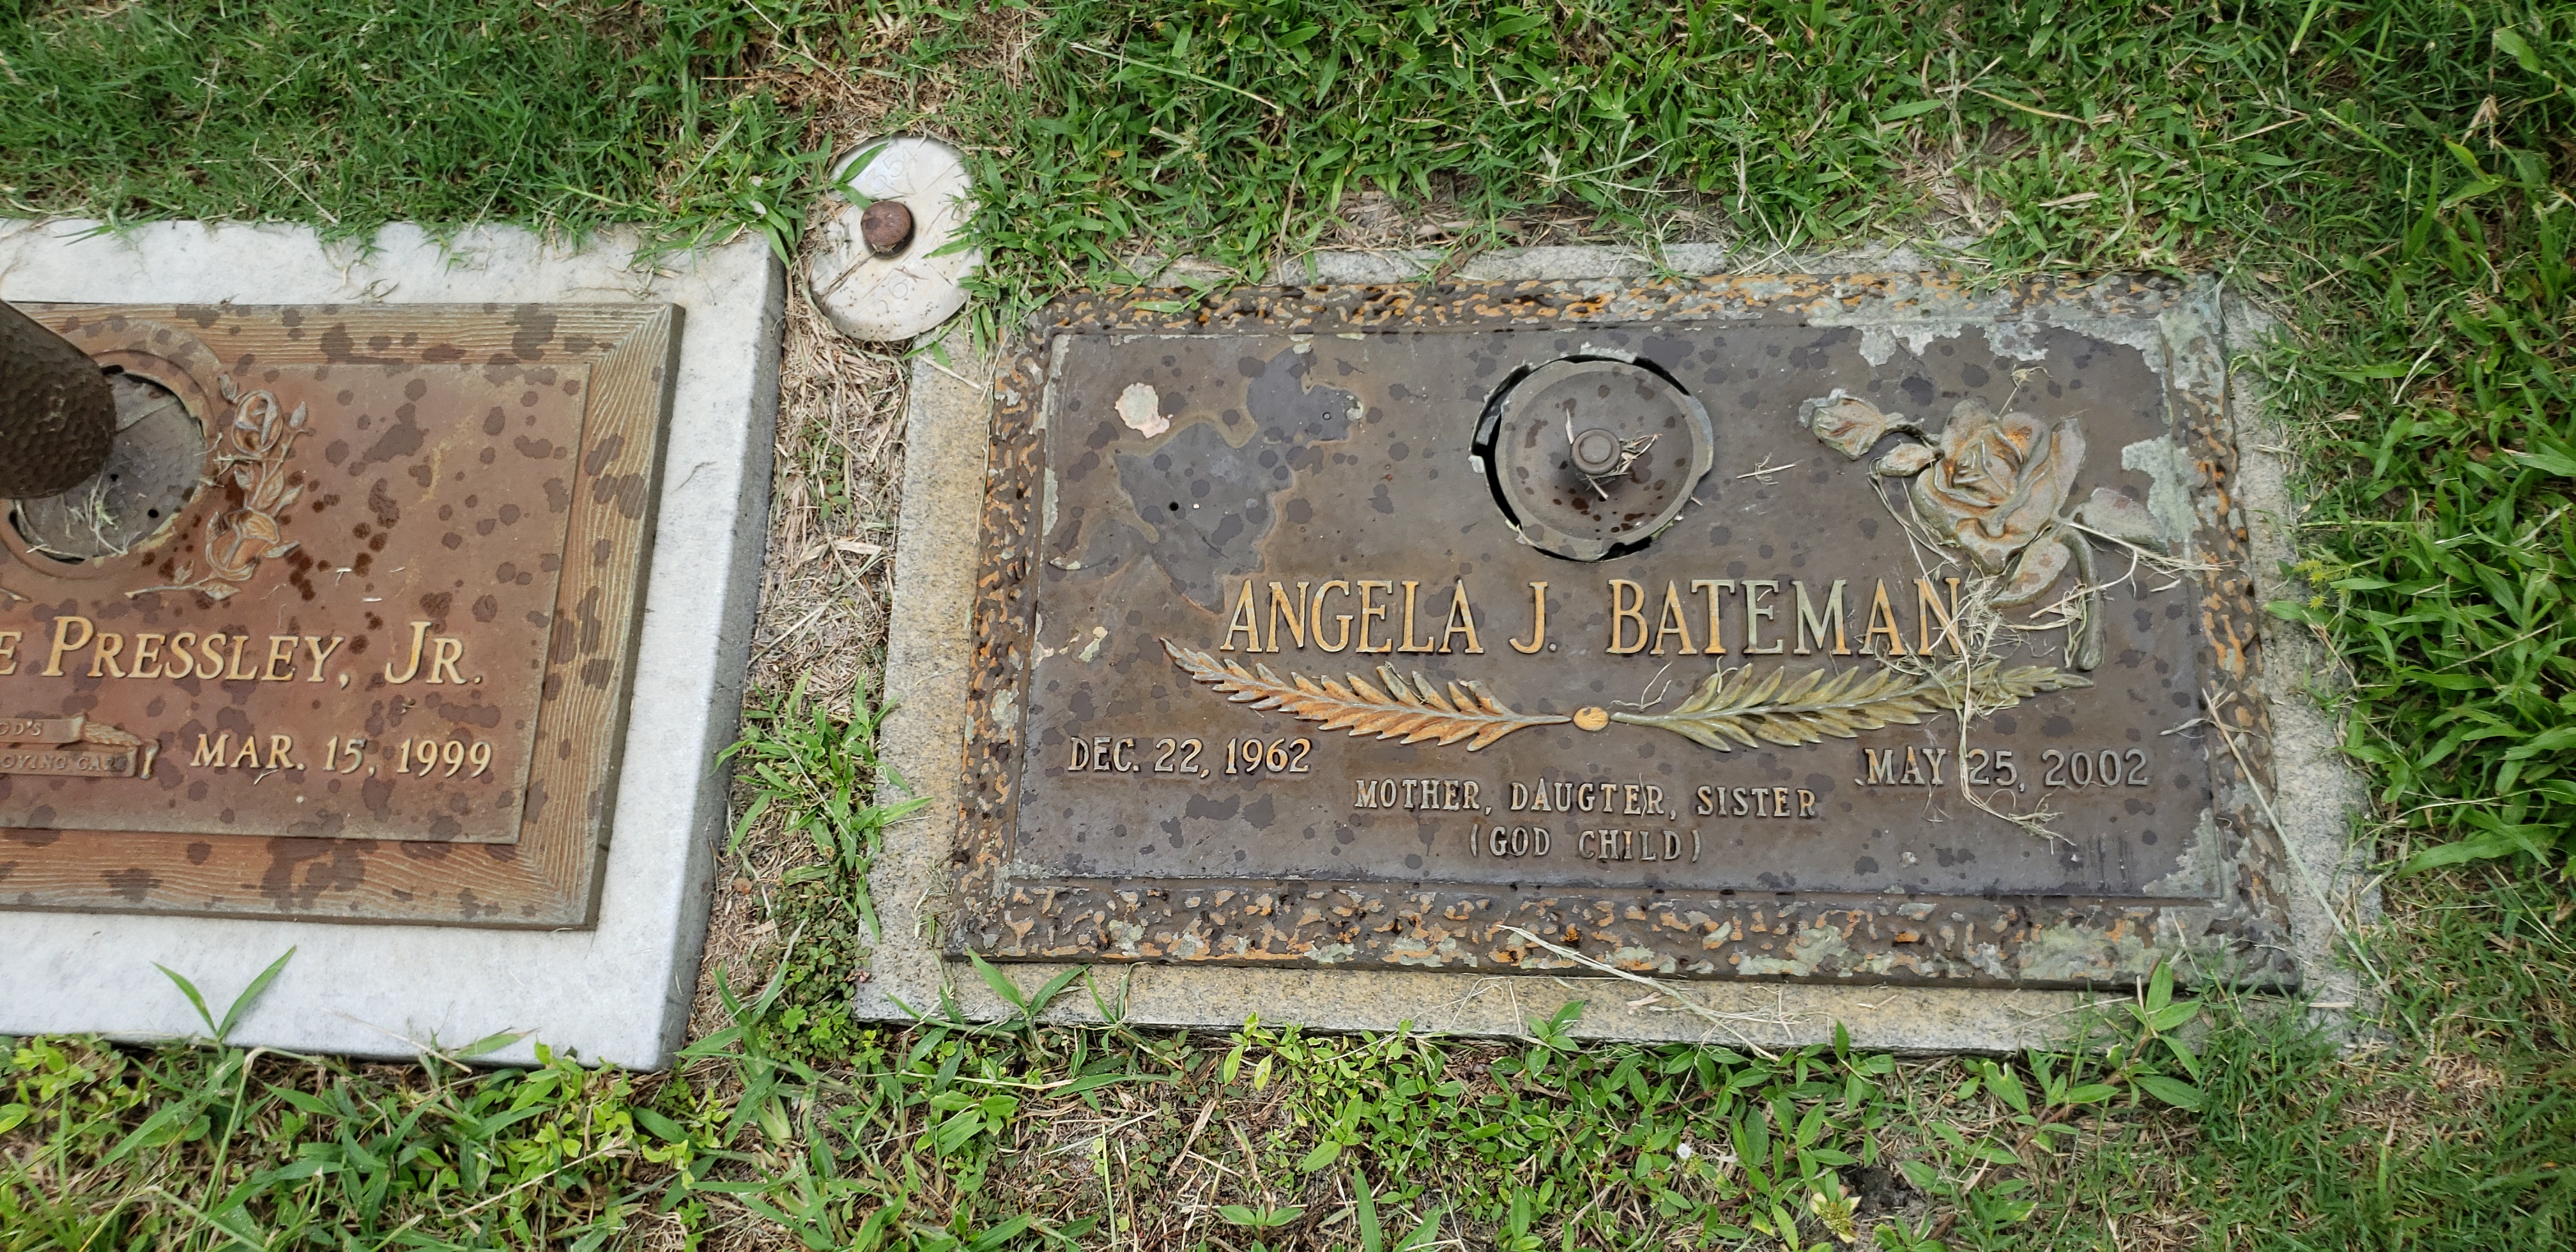 Angela J Bateman